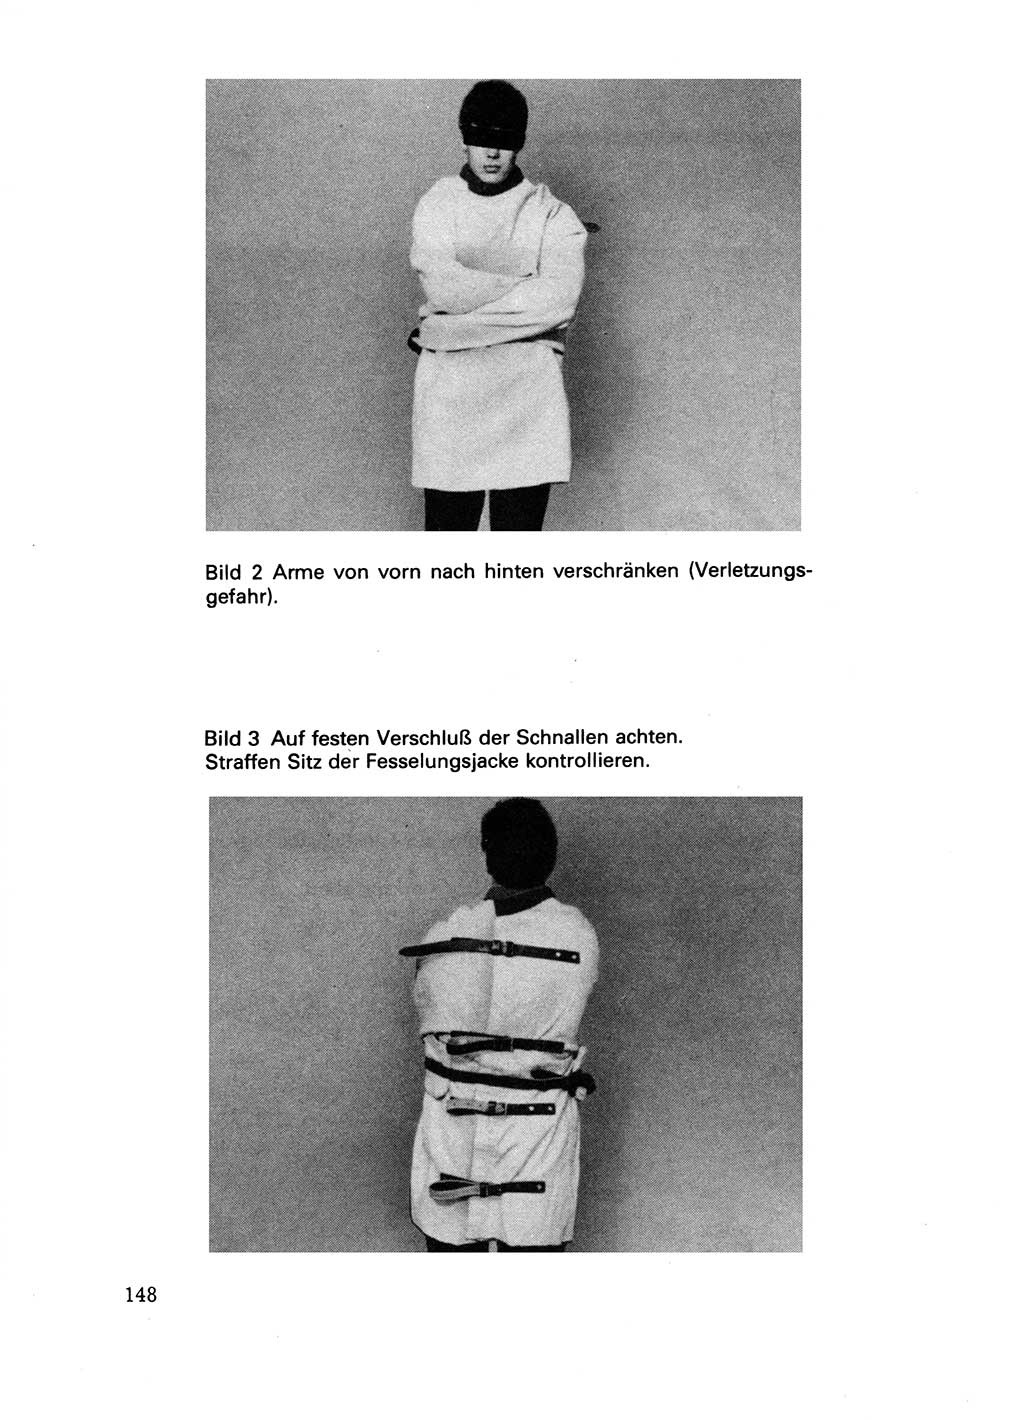 Handbuch für operative Dienste, Abteilung Strafvollzug (SV) [Ministerium des Innern (MdI) Deutsche Demokratische Republik (DDR)] 1981, Seite 148 (Hb. op. D. Abt. SV MdI DDR 1981, S. 148)